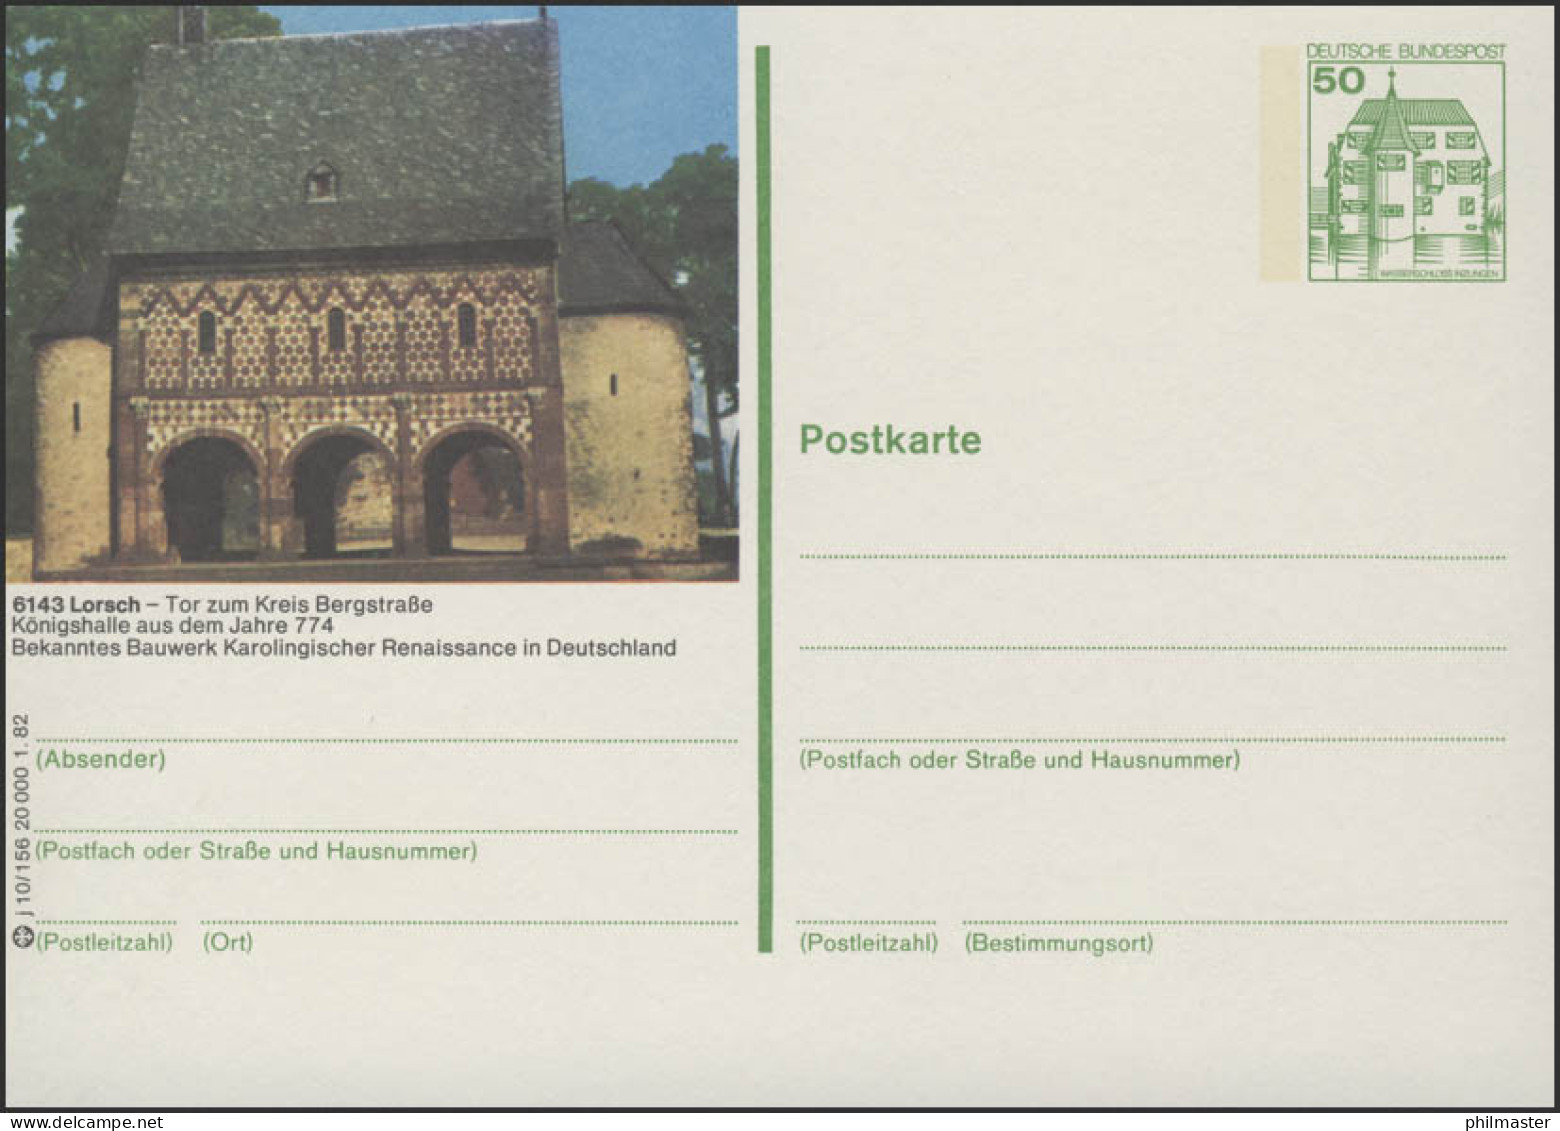 P134-j10/156 6143 Lorsch - Königshalle ** - Geïllustreerde Postkaarten - Ongebruikt